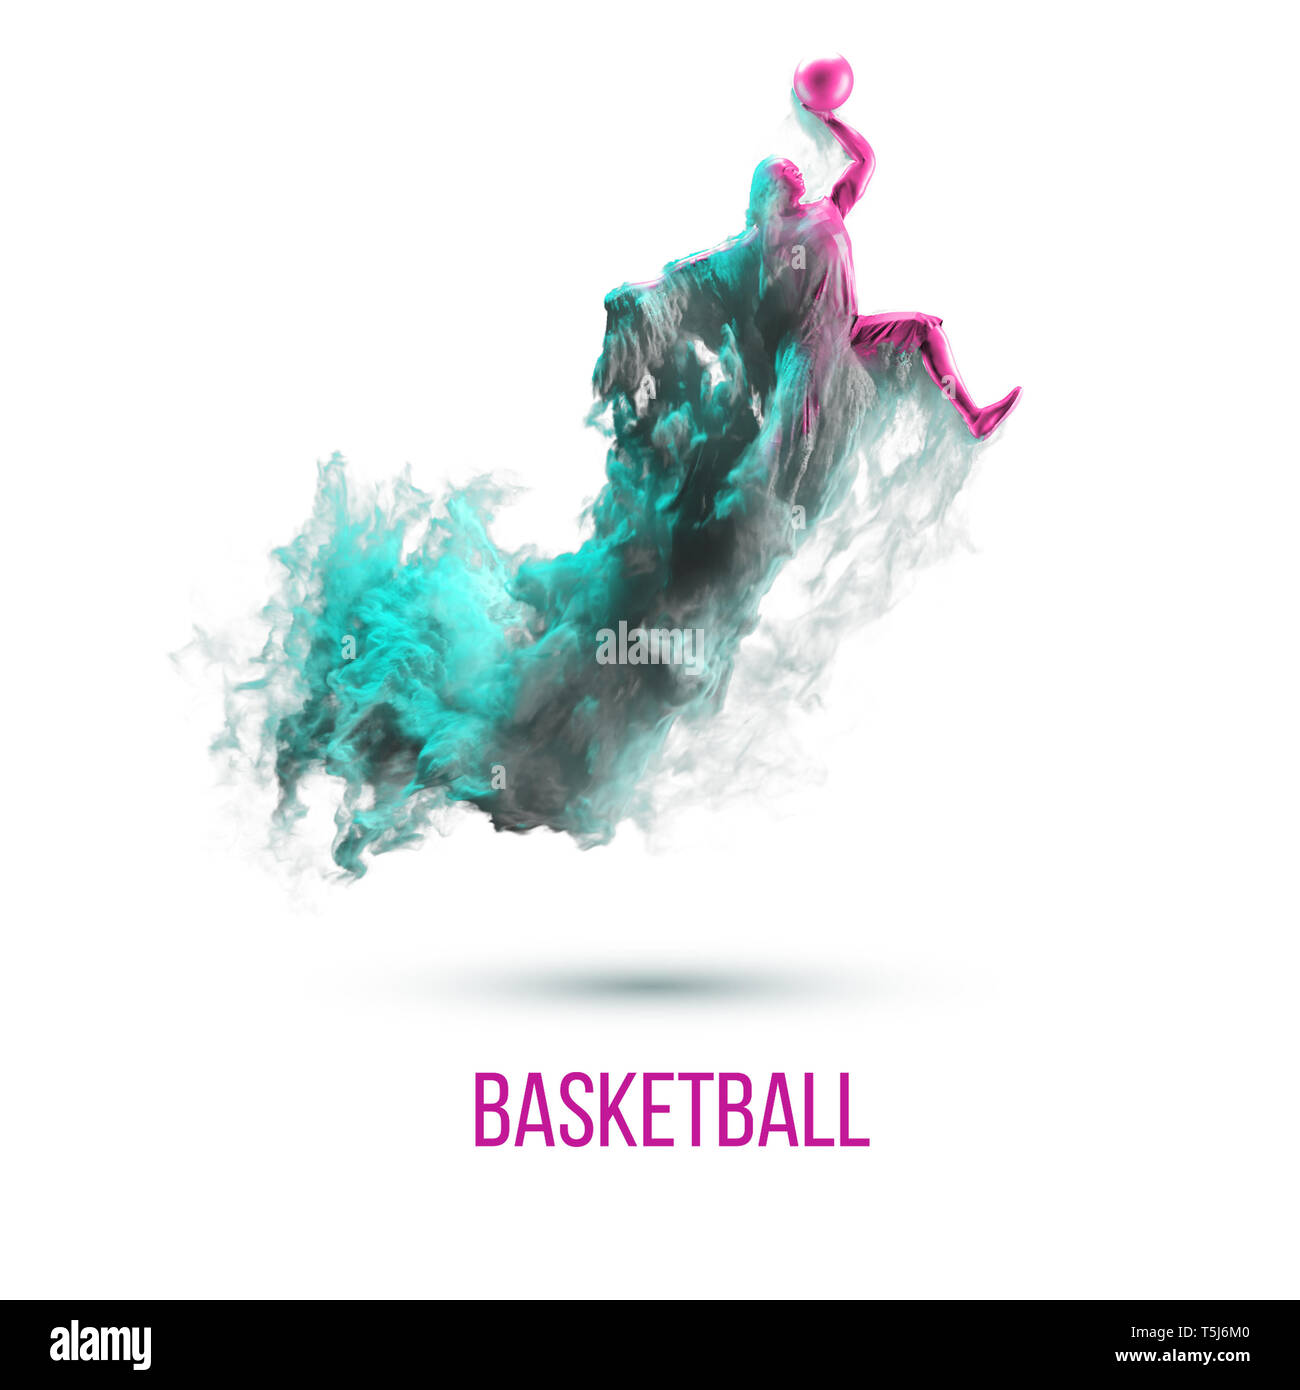 Abstrakte Silhouette eines Basketballspielers auf weißem Hintergrund, isoliert von Staub, Rauch, Dampf. Basketballspieler springen und führt Slam Dunk. Stockfoto